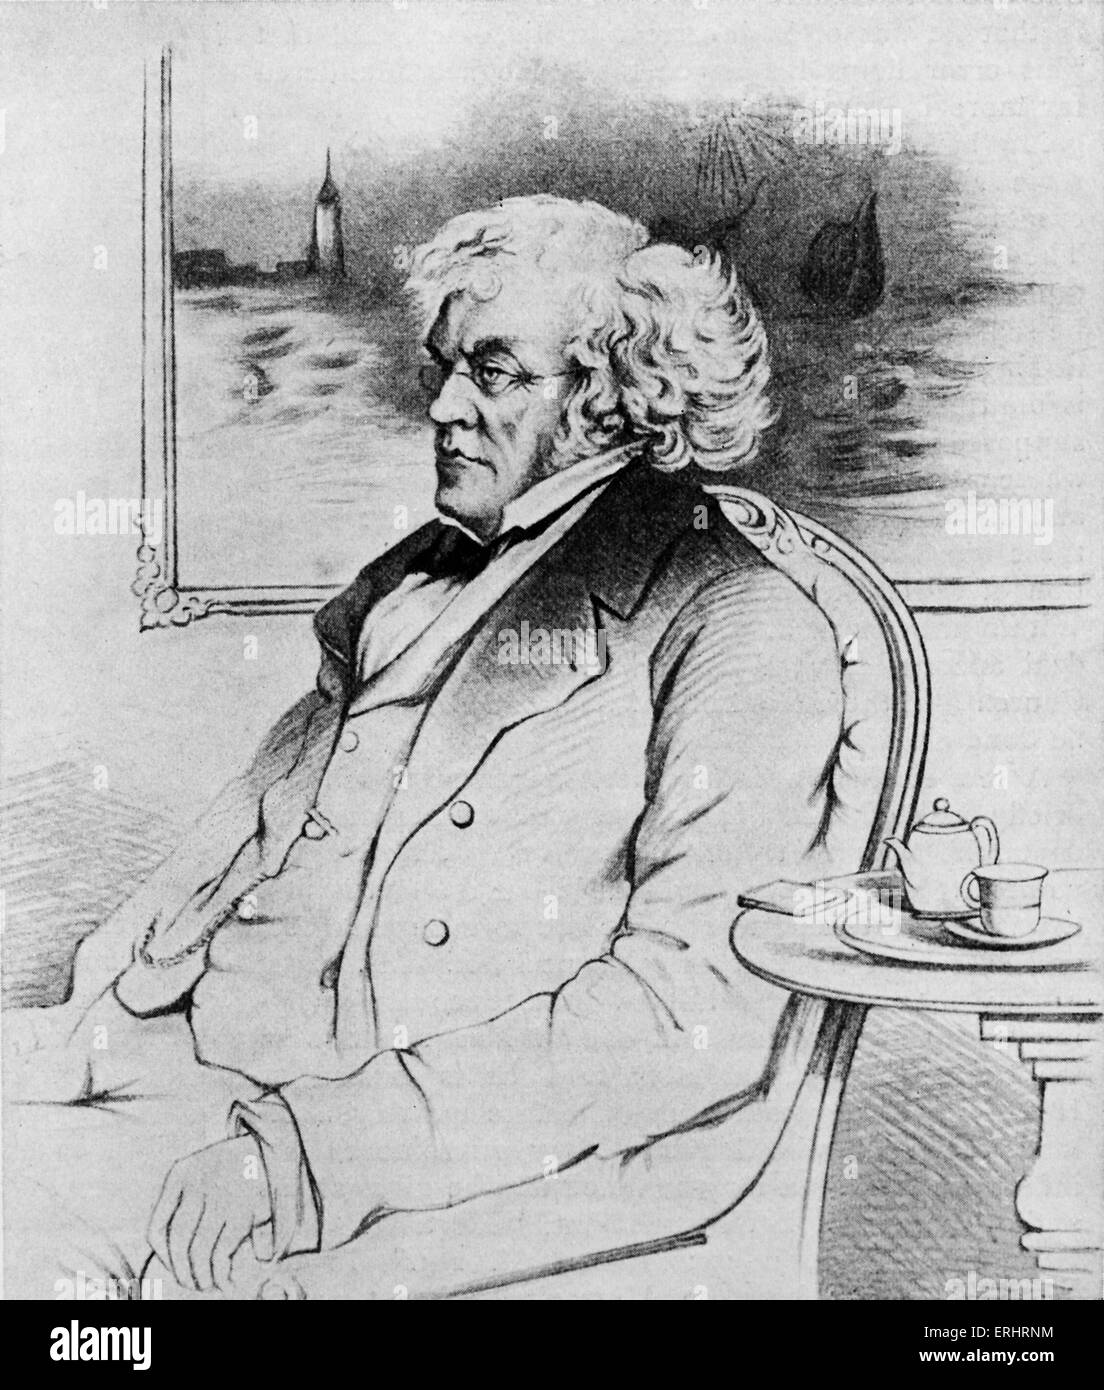 William Makepeace Thackeray - portrait posthume. Peinture de John Gilbert. Lola la romancière anglaise, 18 juillet 1811 - 24 Décembre Banque D'Images